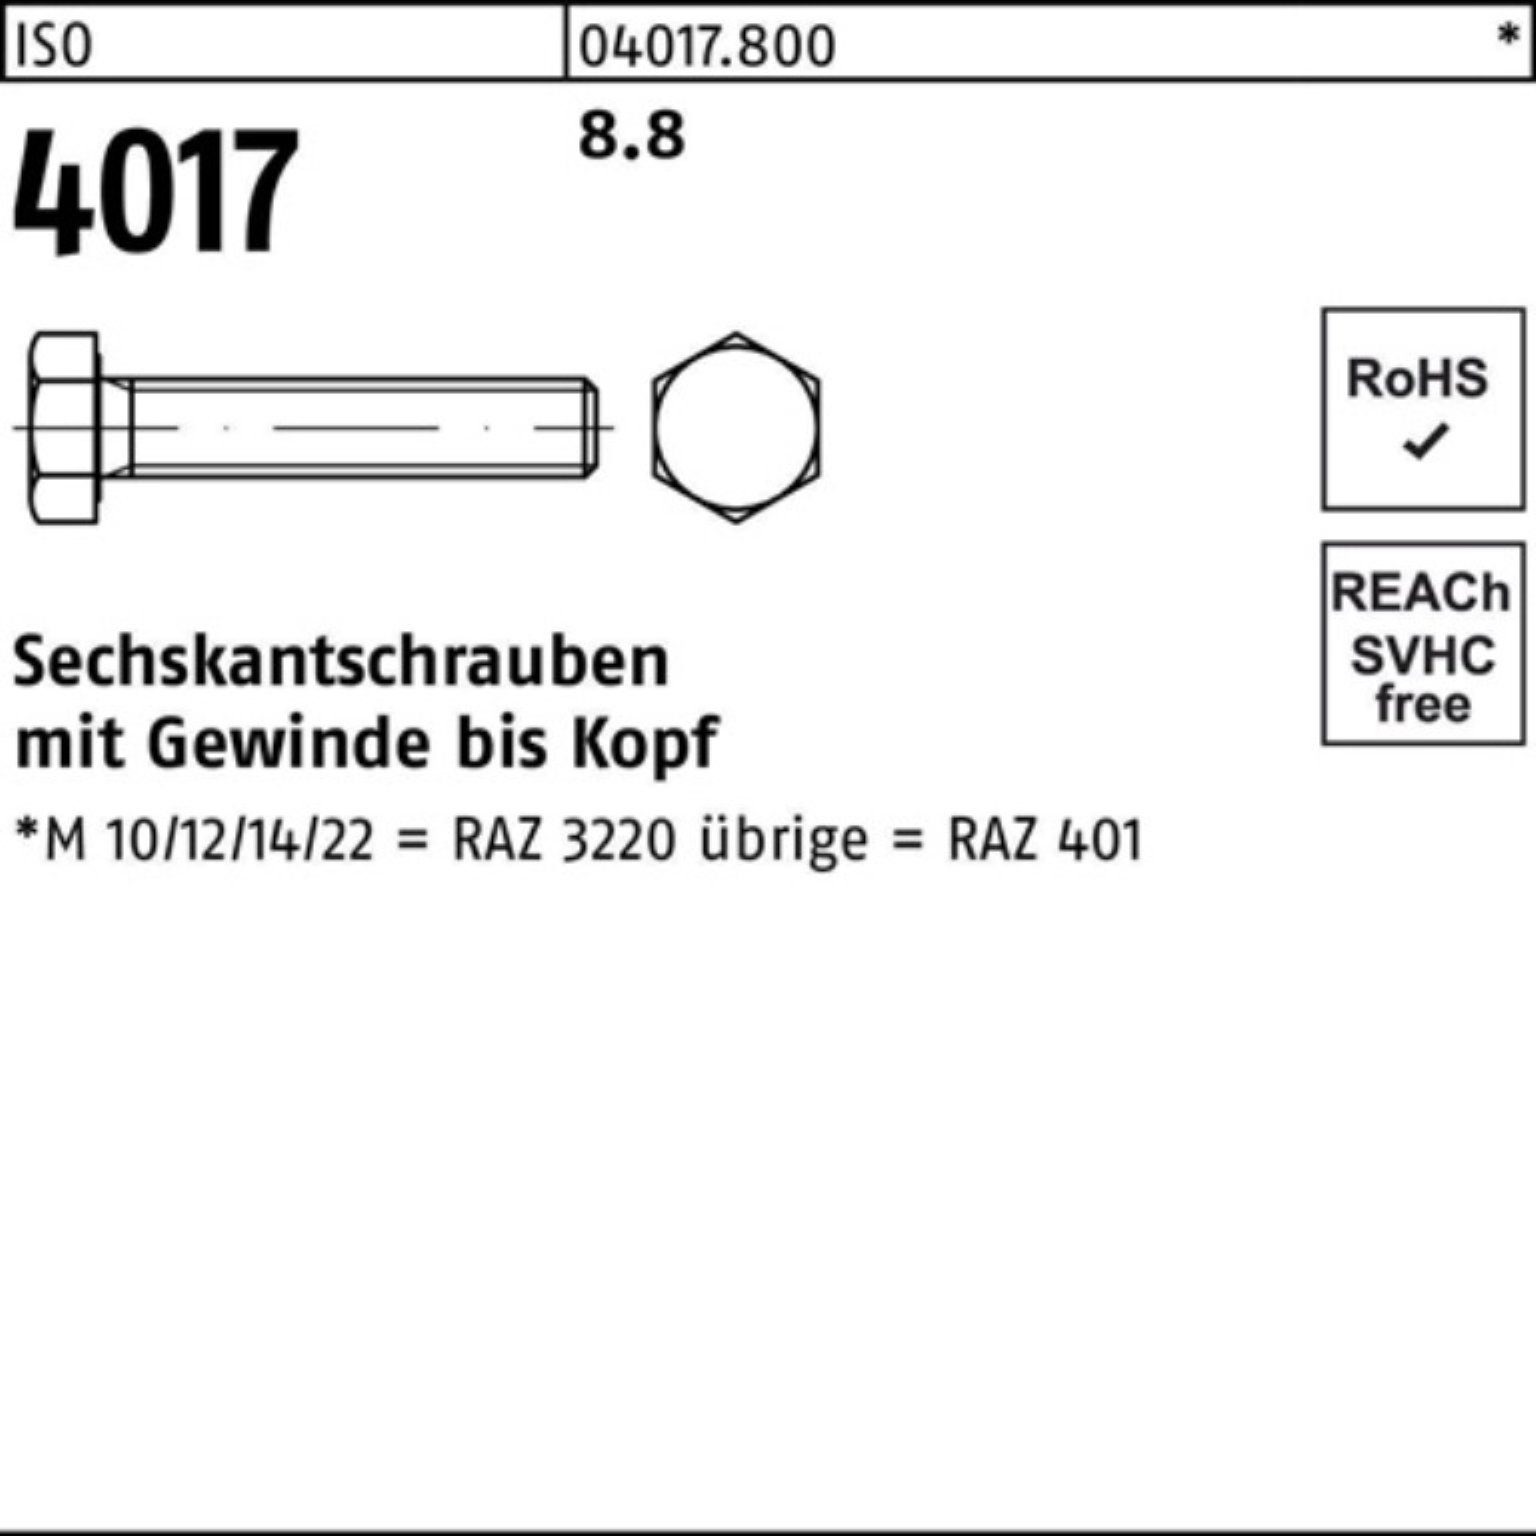 VG ISO Sechskantschraube Pack 401 8.8 12 500er 500 Stück M7x 4017 ISO Sechskantschraube Bufab